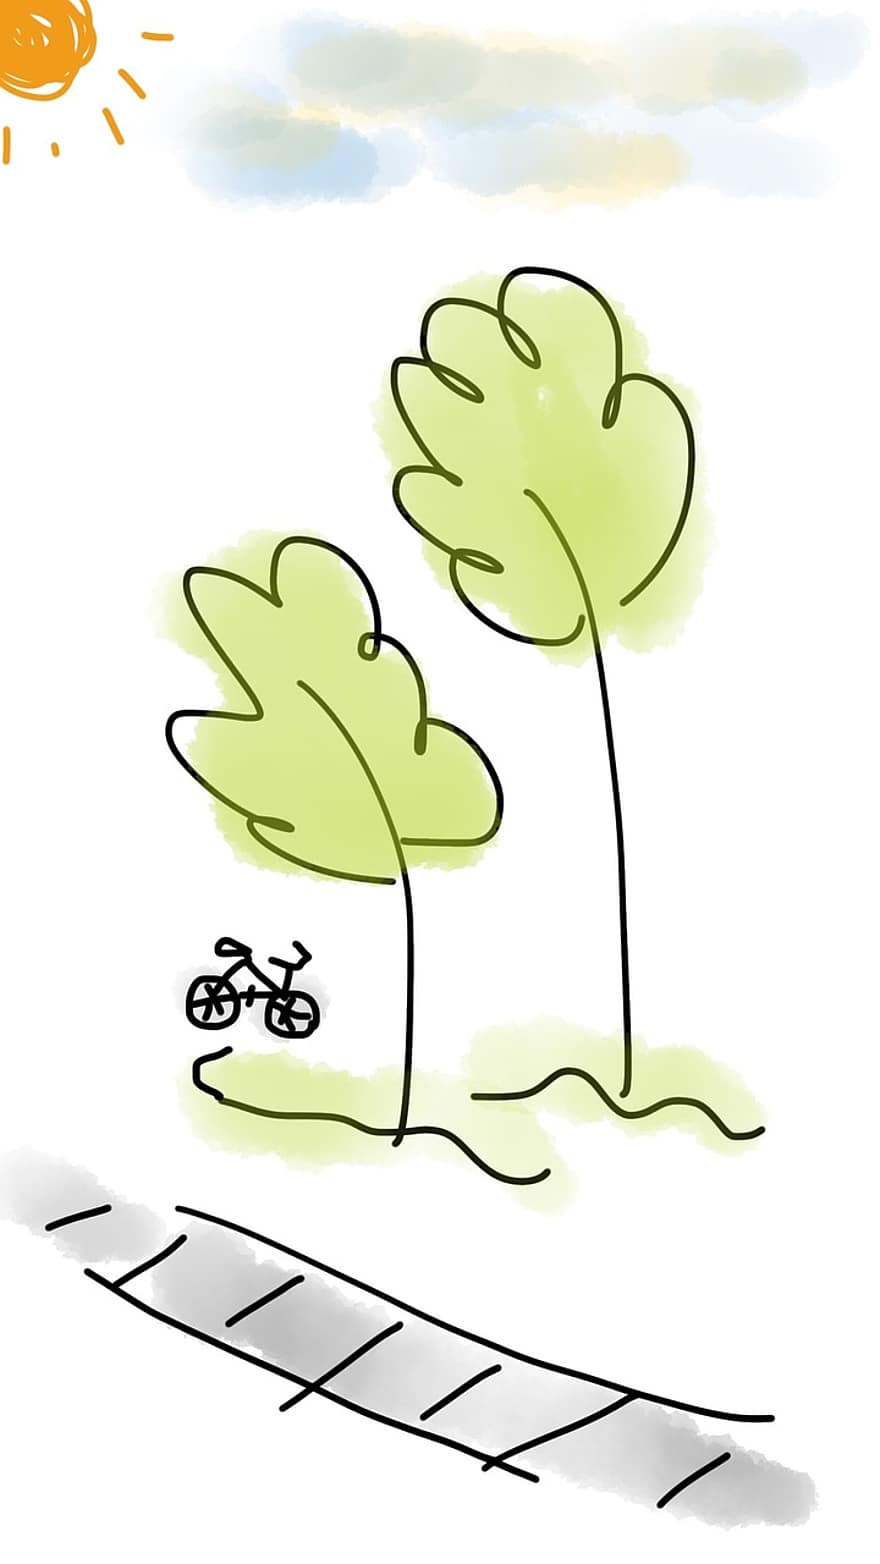 Fahrrad, Baum, draussen, Grün, Weg, Sport, Straße, Aktivität, Radfahren, Sonne, sonnig